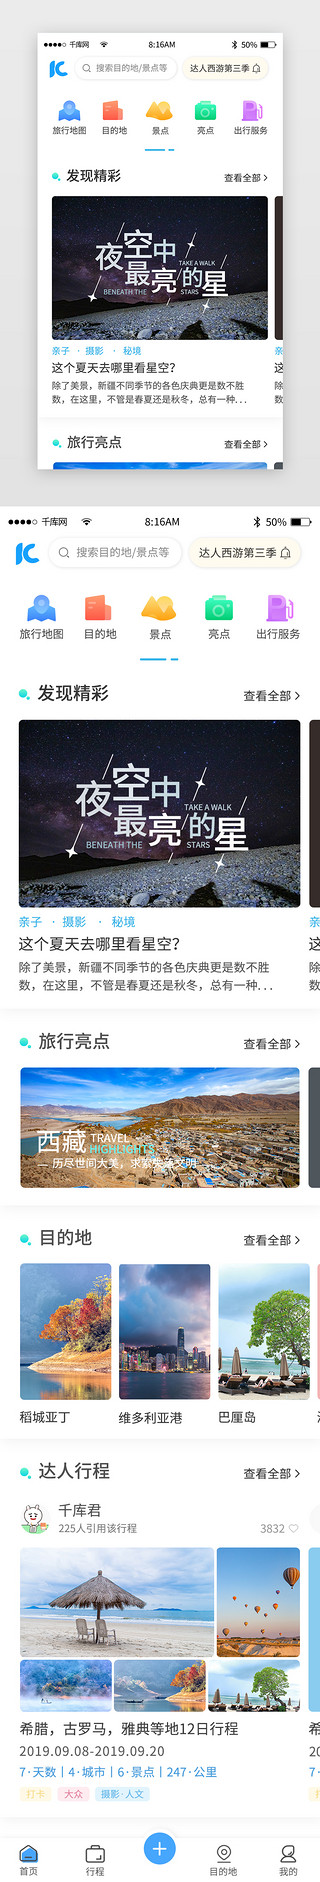 精彩影片UI设计素材_蓝色简约旅游旅行app主界面